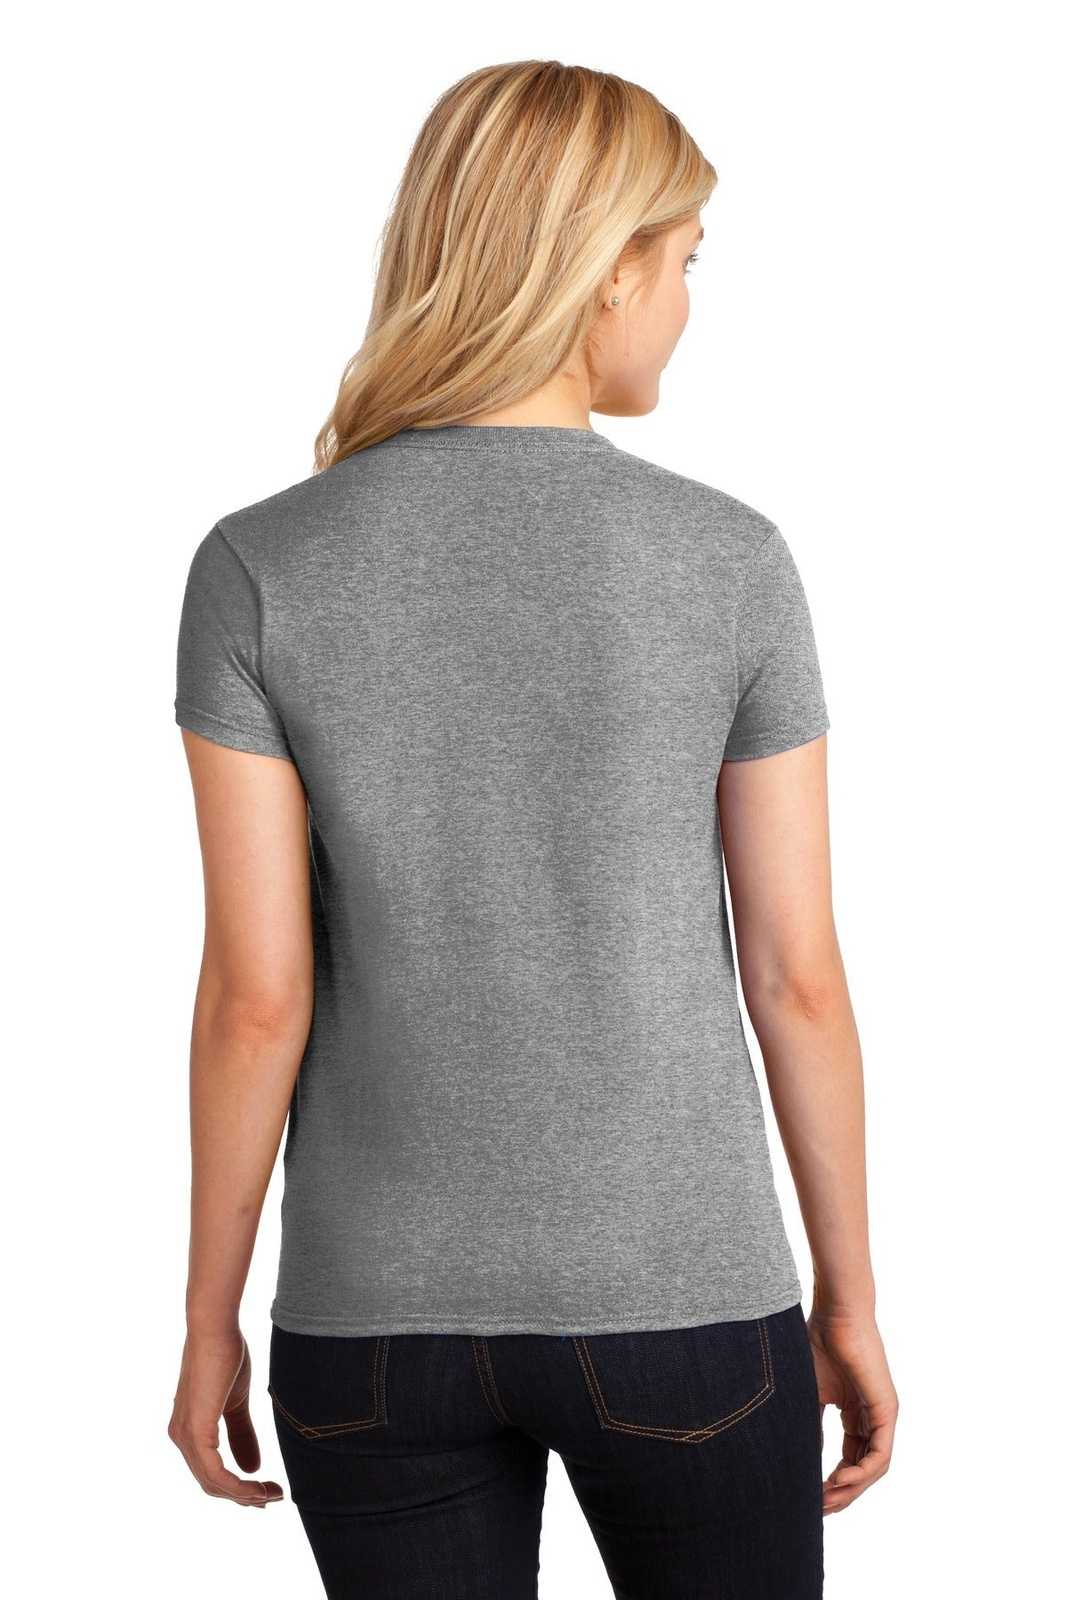 Gildan 5000L Ladies Heavy Cotton 100% Cotton T-Shirt - Graphite Heather - HIT a Double